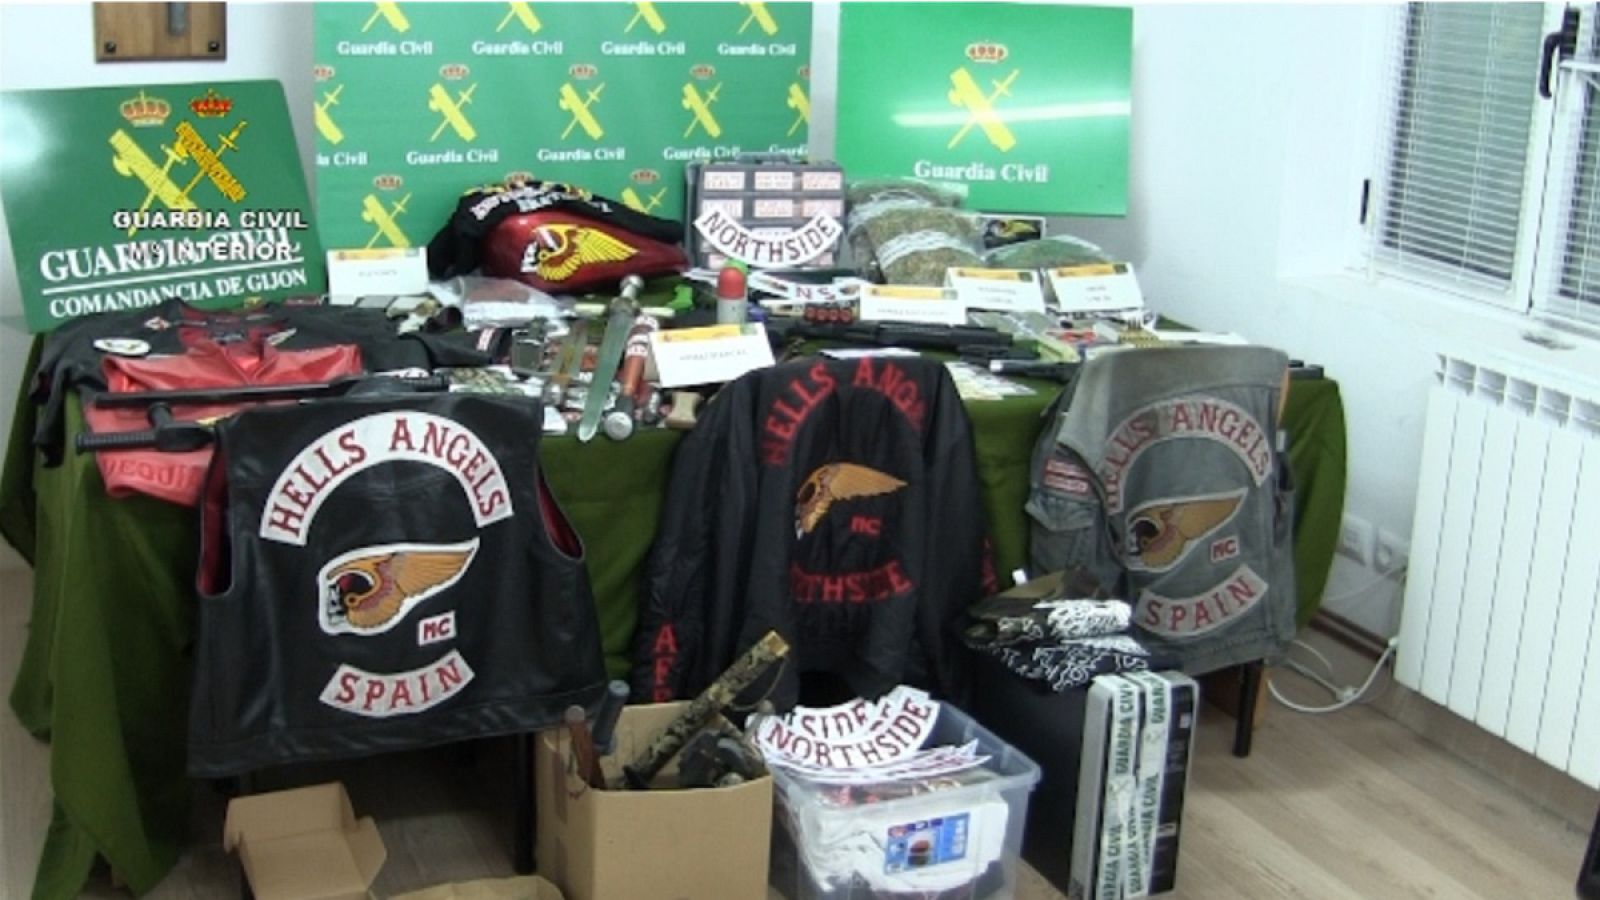 La Guardia Civil ha encontrado armas, cartuchos, drogas y material para instalar plantaciones de marihuana en cuatro provincias españolas.